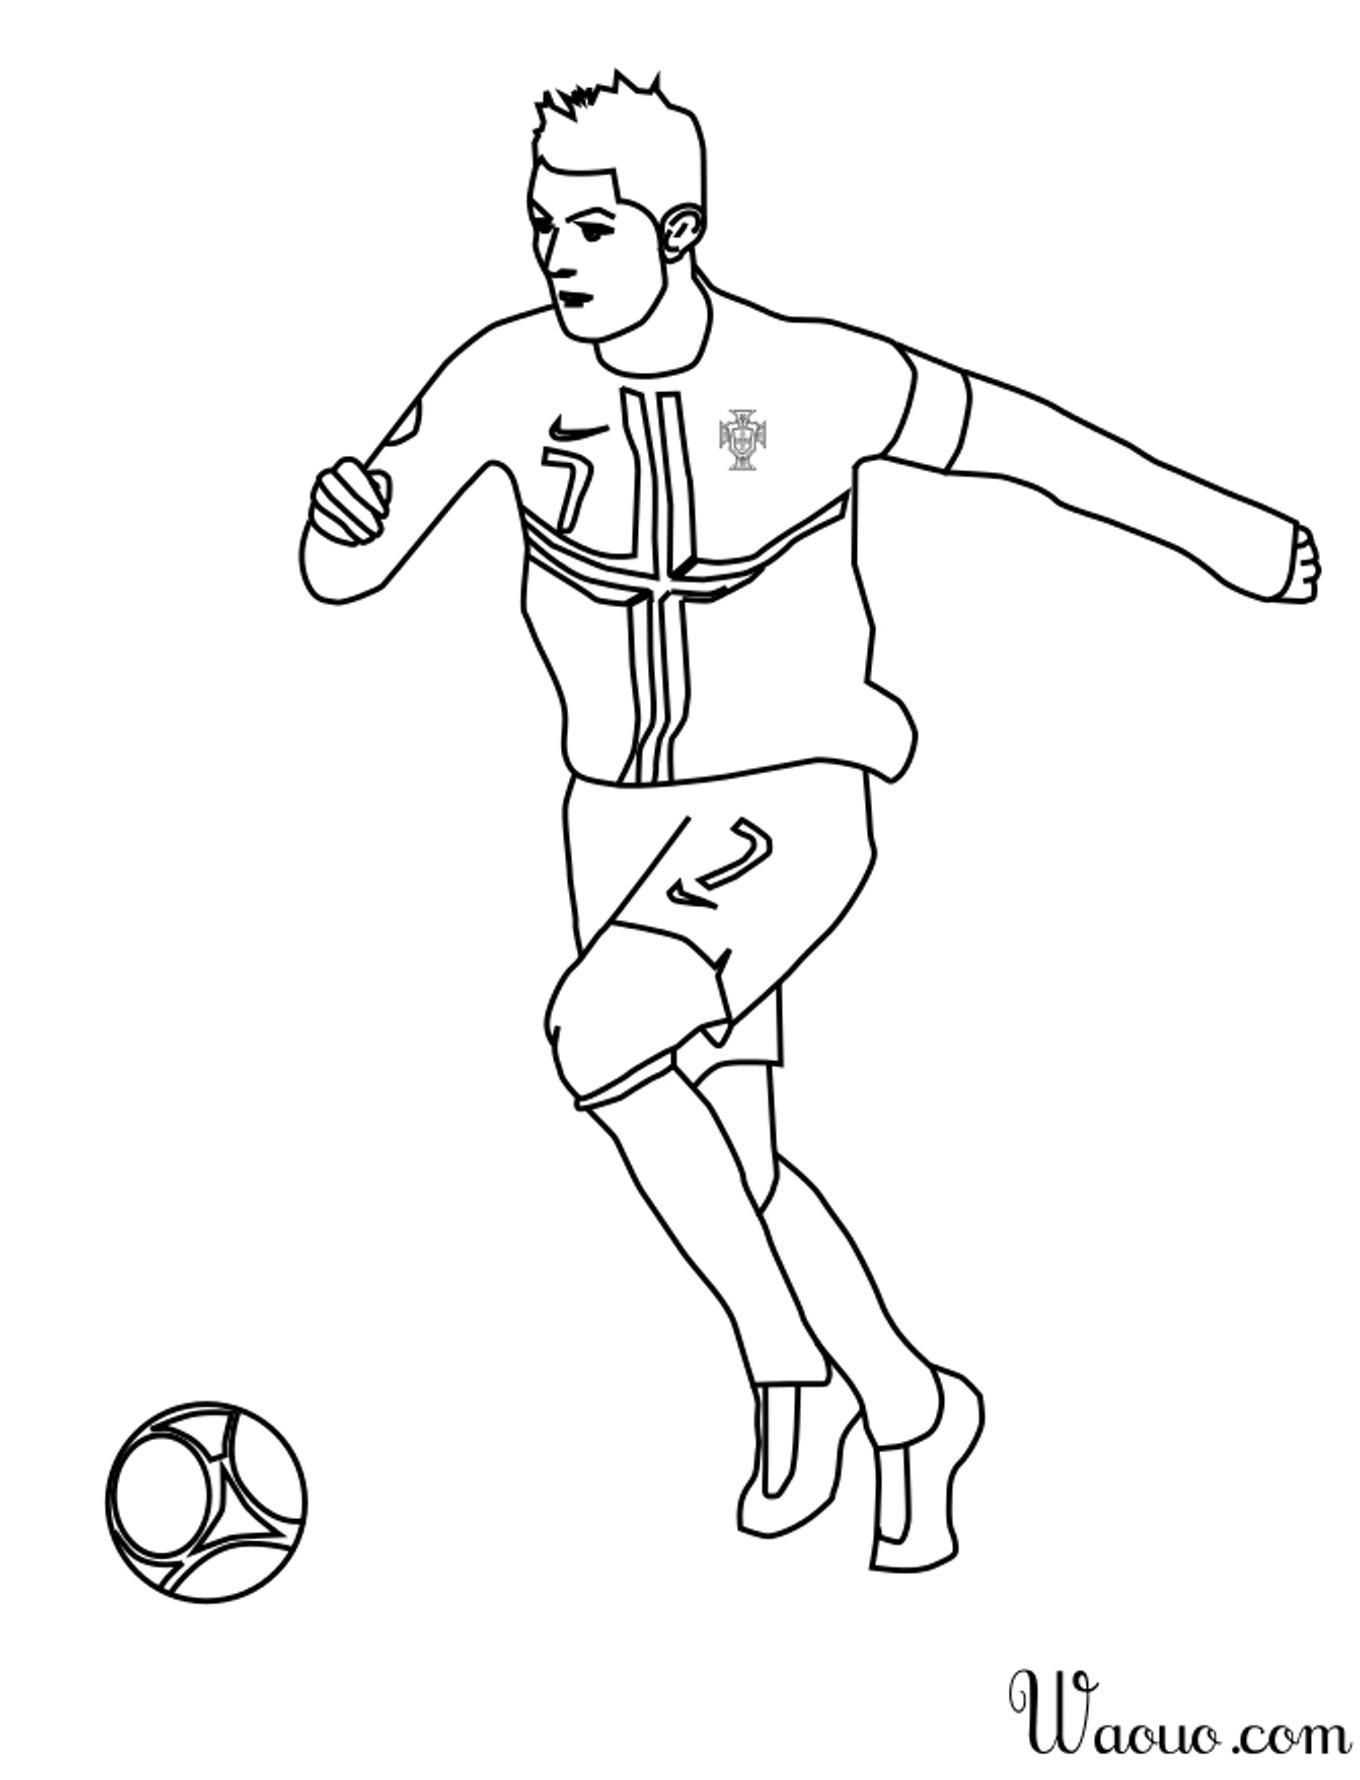 Как нарисовать футбольный мяч - wikihow